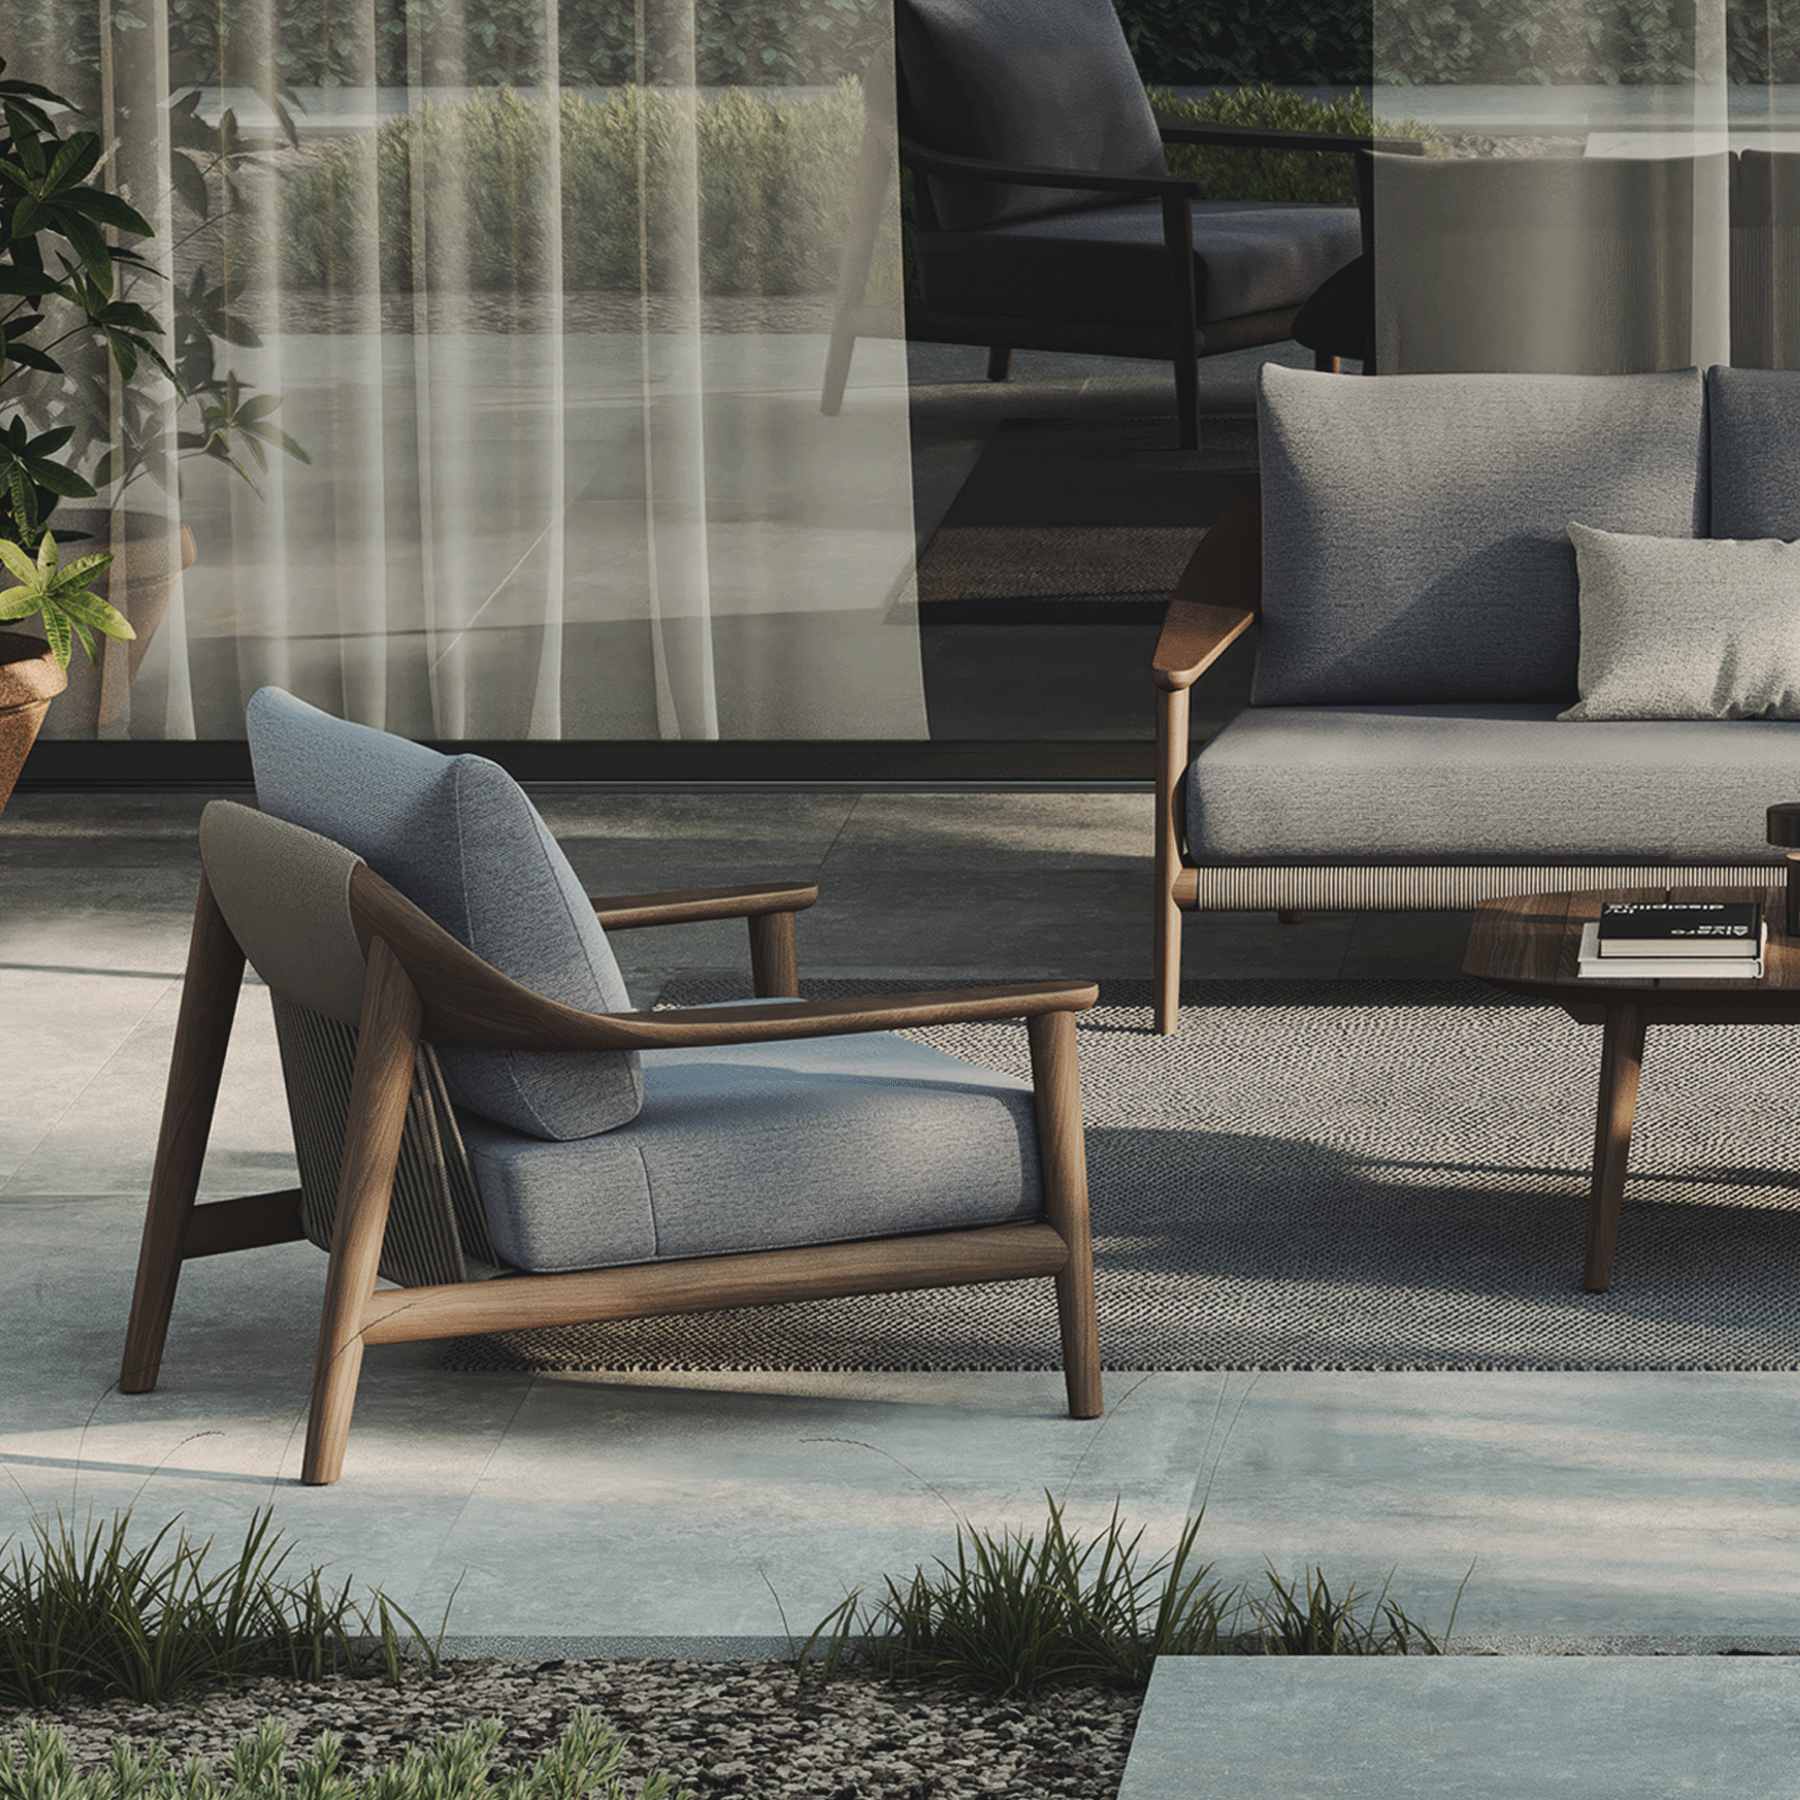 N1 luxury dark teak outdoor furniture with mid century inspired rope detail 